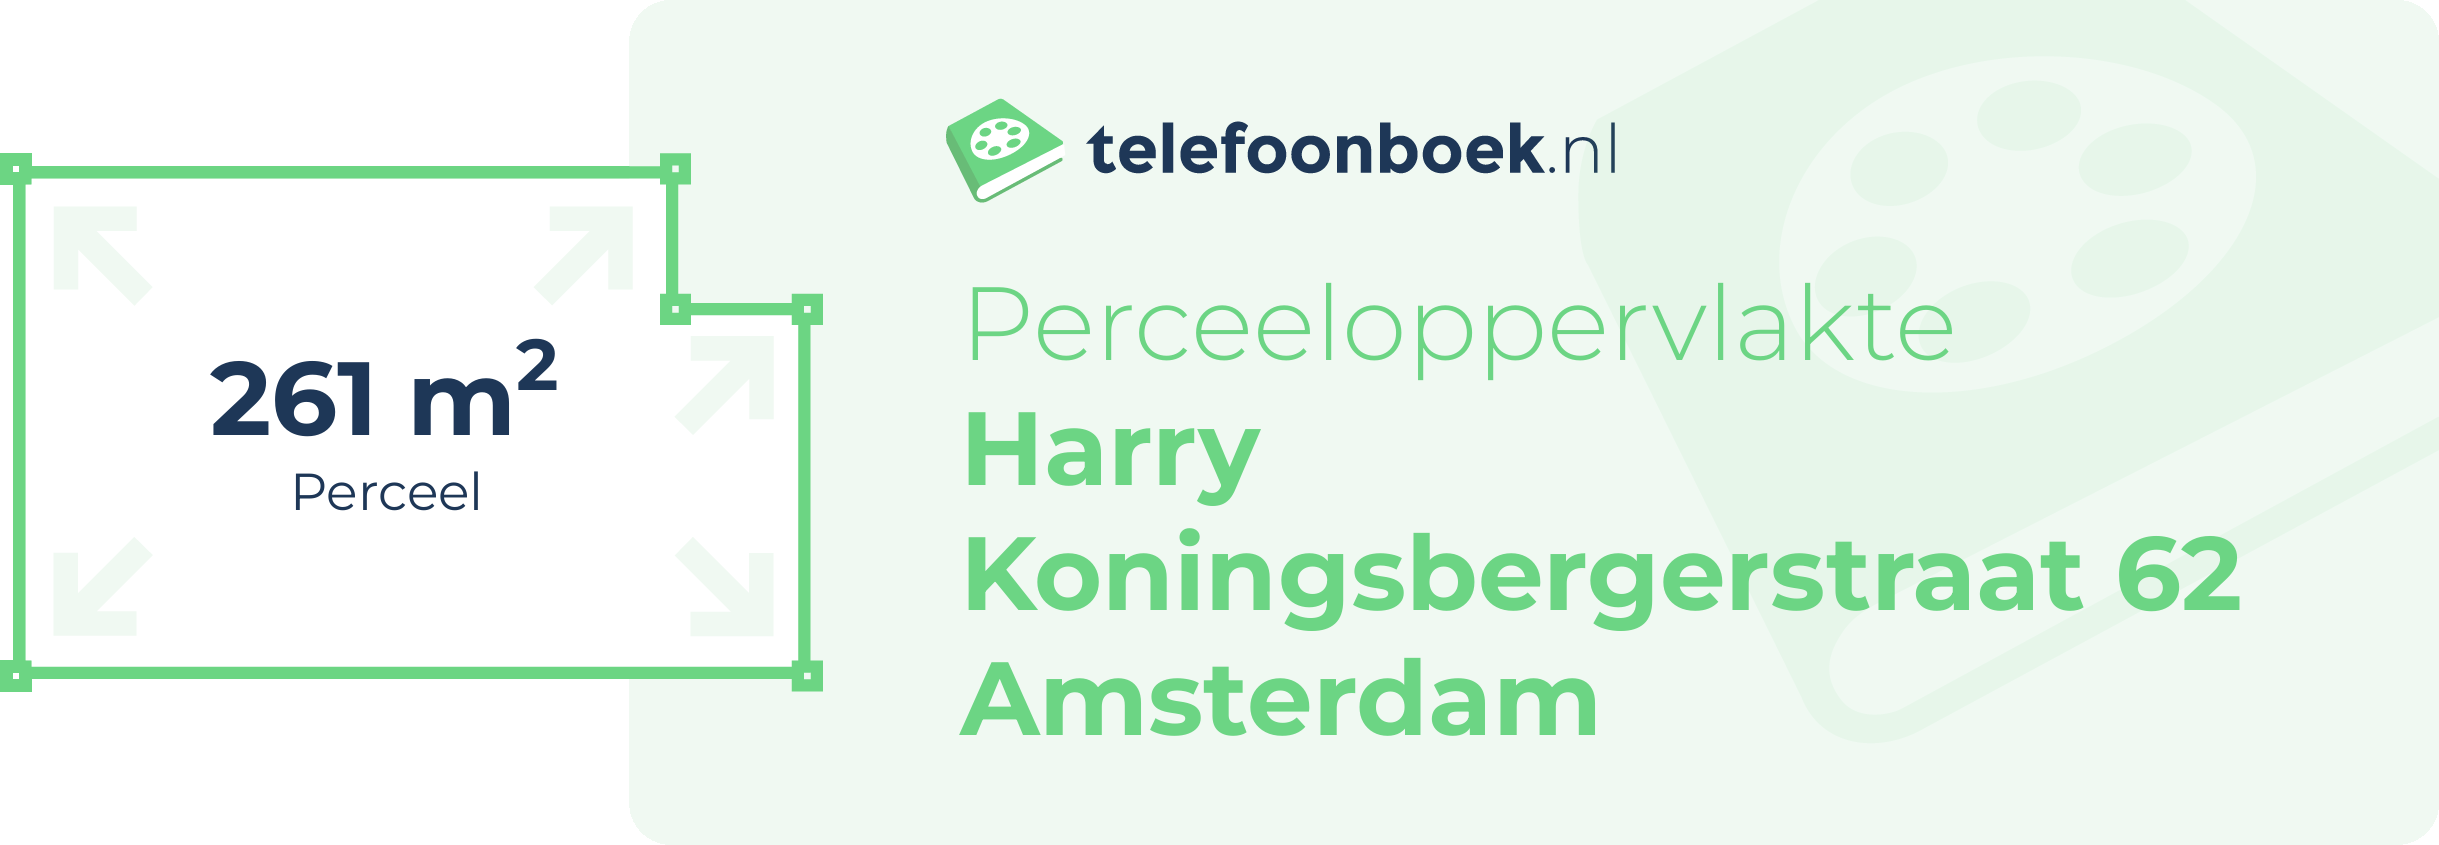 Perceeloppervlakte Harry Koningsbergerstraat 62 Amsterdam